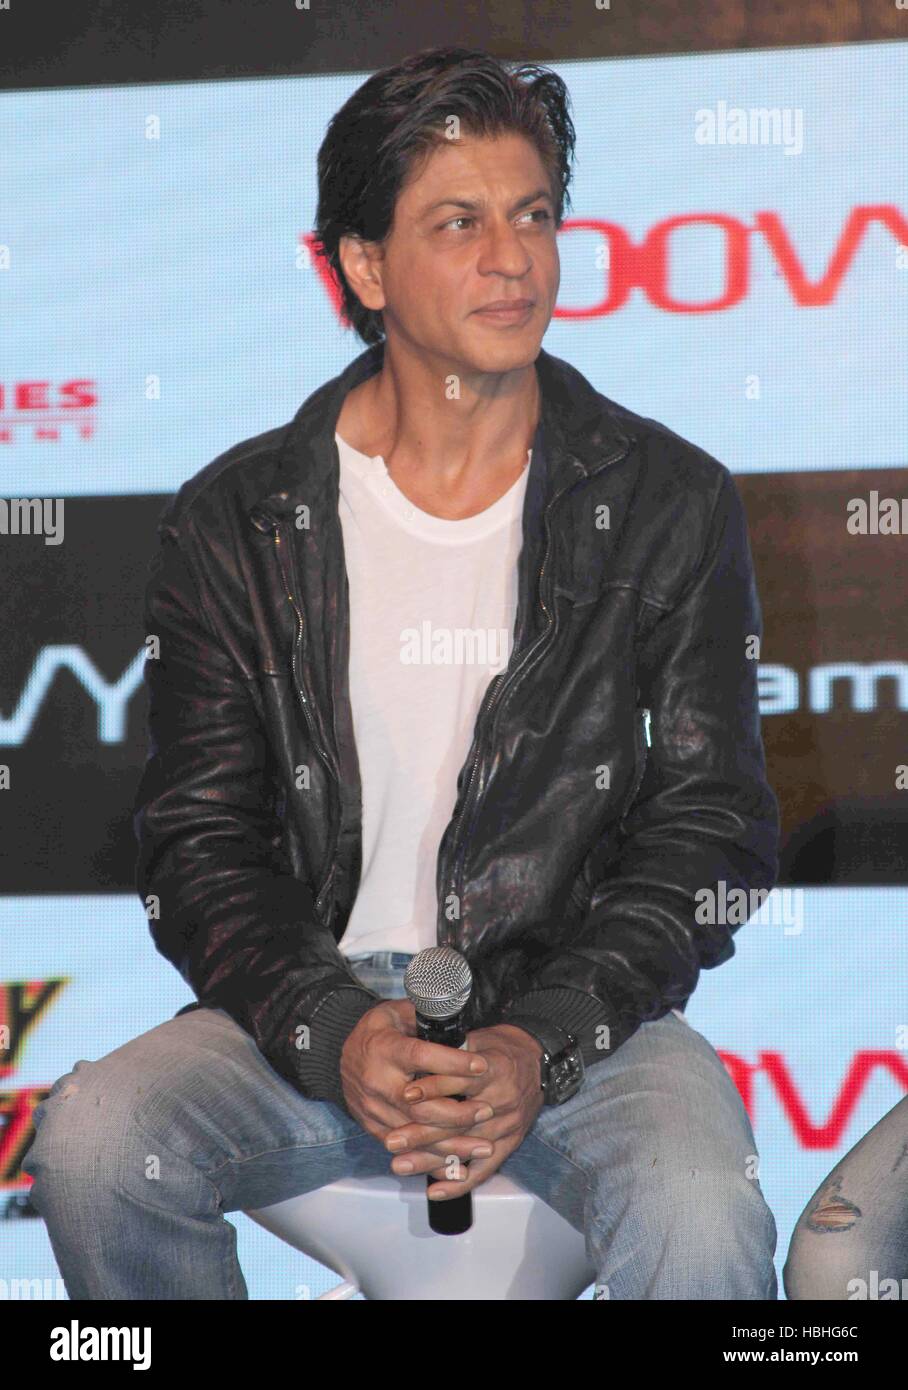 Attore Bollywood Shah Rukh Khan ritratto, camicia bianca, giacca nera, microfono in mano, al film felice anno nuovo evento a Mumbai, India Foto Stock